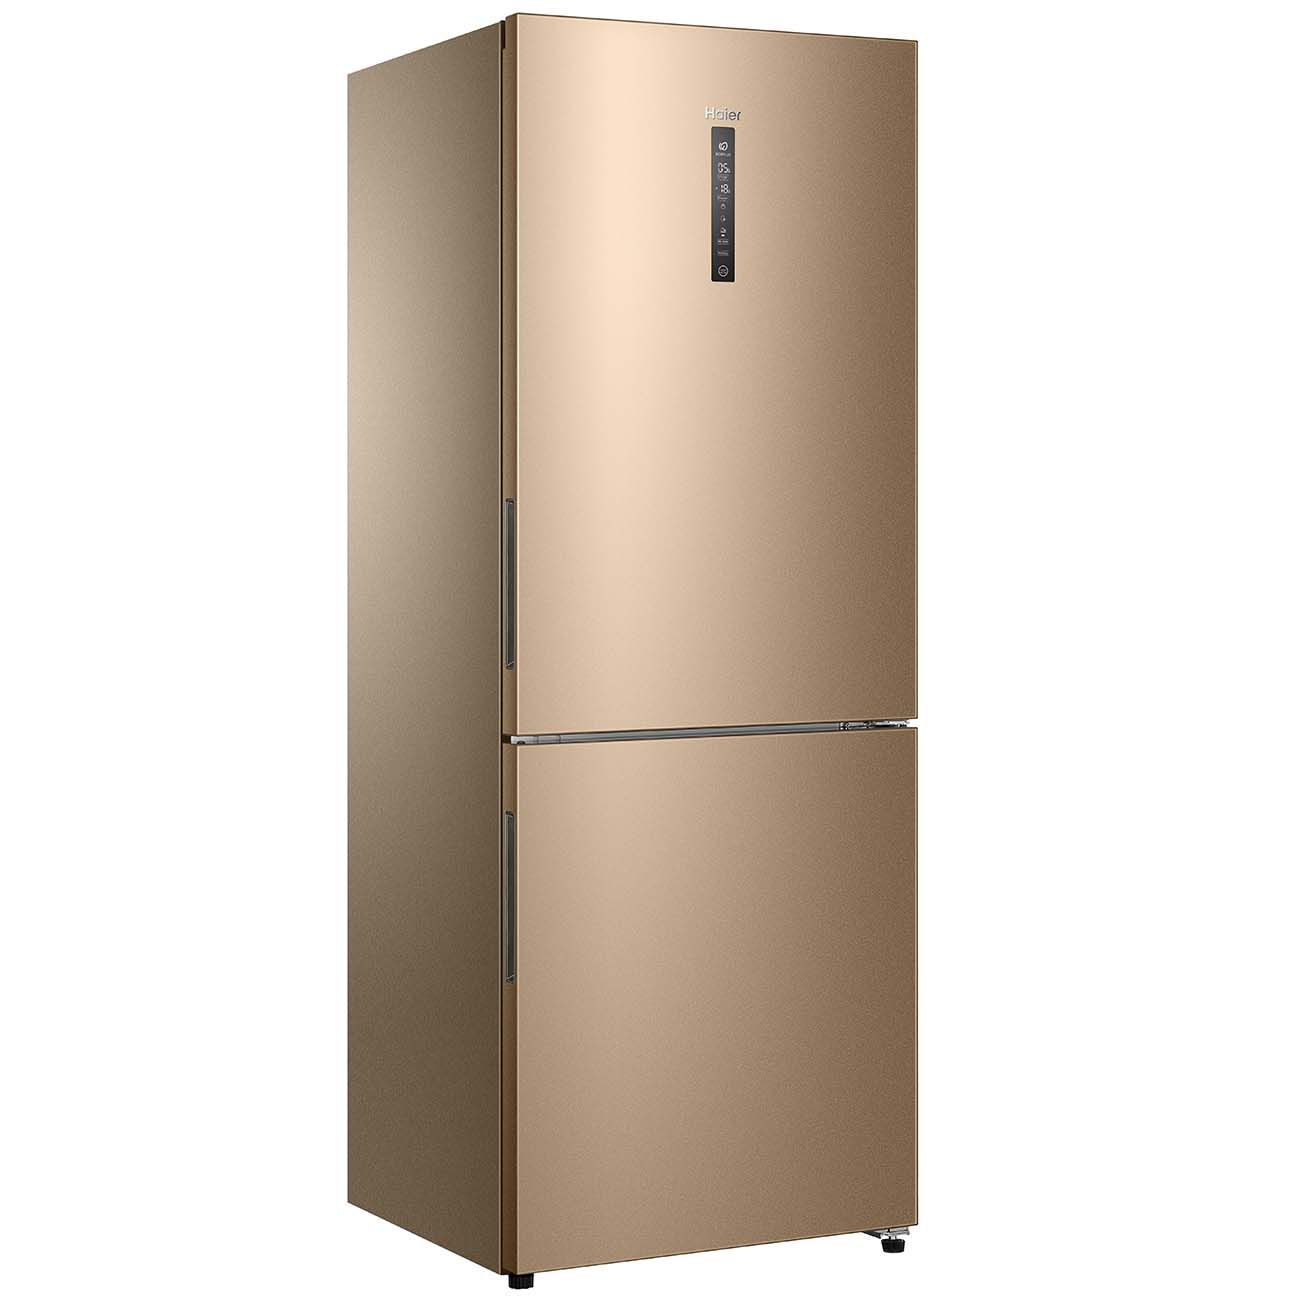 Холодильник хайер производитель. Холодильник Haier c4f744cmg. 744cgg Haier холодильник. Холодильник Haier c4f744ccg бежевый. Холодильник с морозильником Haier c4f744cmg.